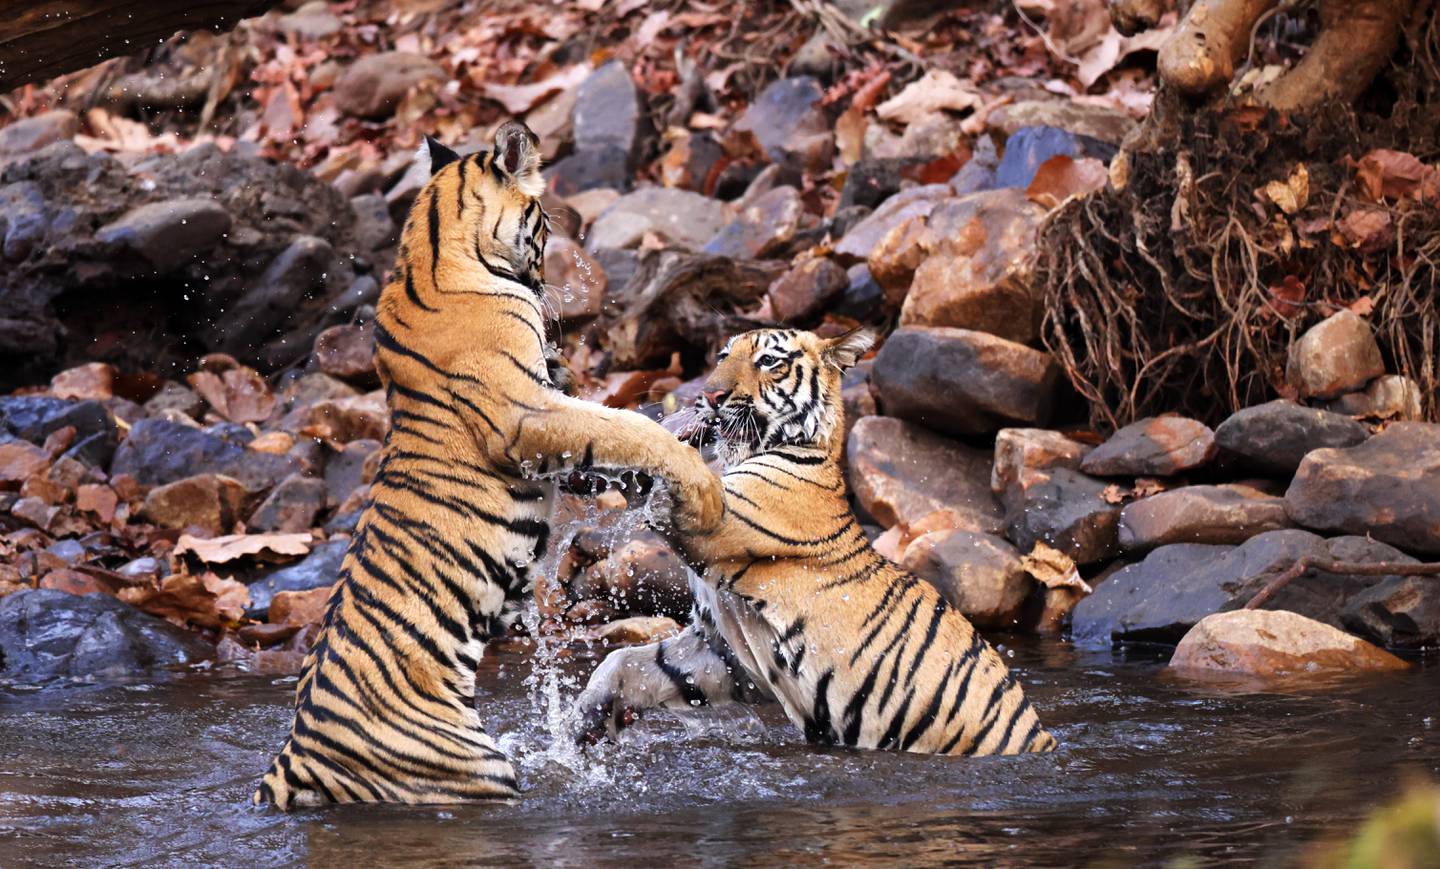 Tom Schandy omtaler en rekke store rovdyr verden rundt i sin nye bok, også tigeren. Bildet viser unge tigere som lekeslåss i Tadoba nasjonalpark i India